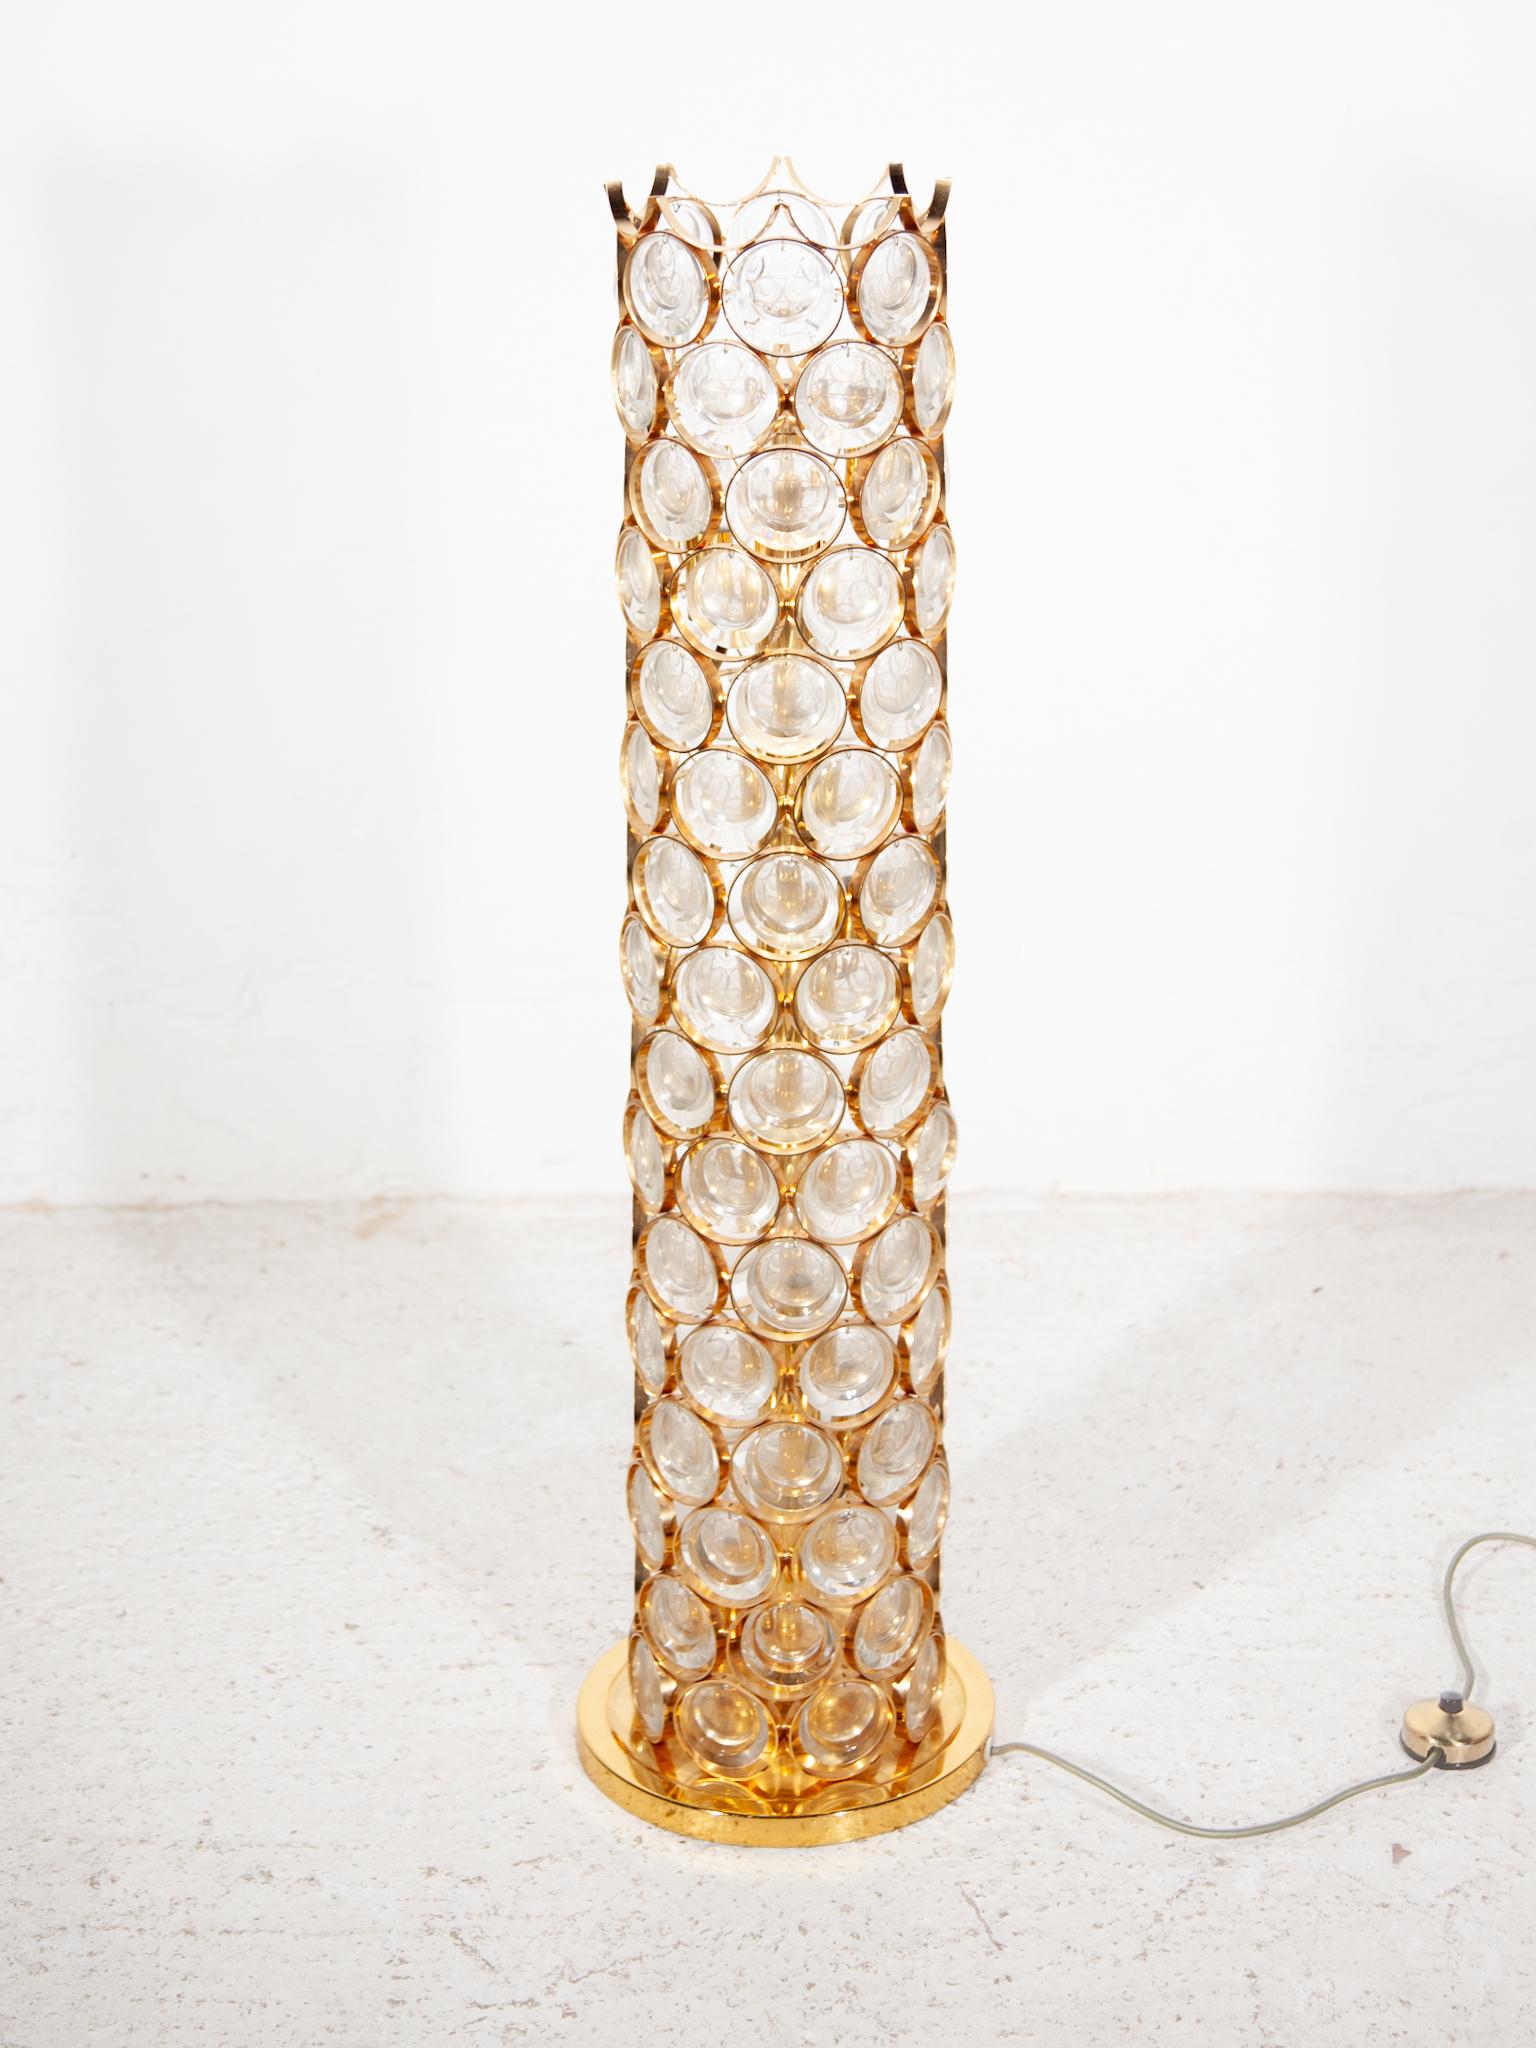 Sehr seltene Hollywood Regency Stehlampe entworfen von Palwa, Deutschland, 1970er Jahre. Mit Sockel aus vergoldetem Messing, Stange und stapelbaren Lampenschirmen mit runden vergoldeten Ringen und hängenden facettierten klaren Kristallscheiben.

10